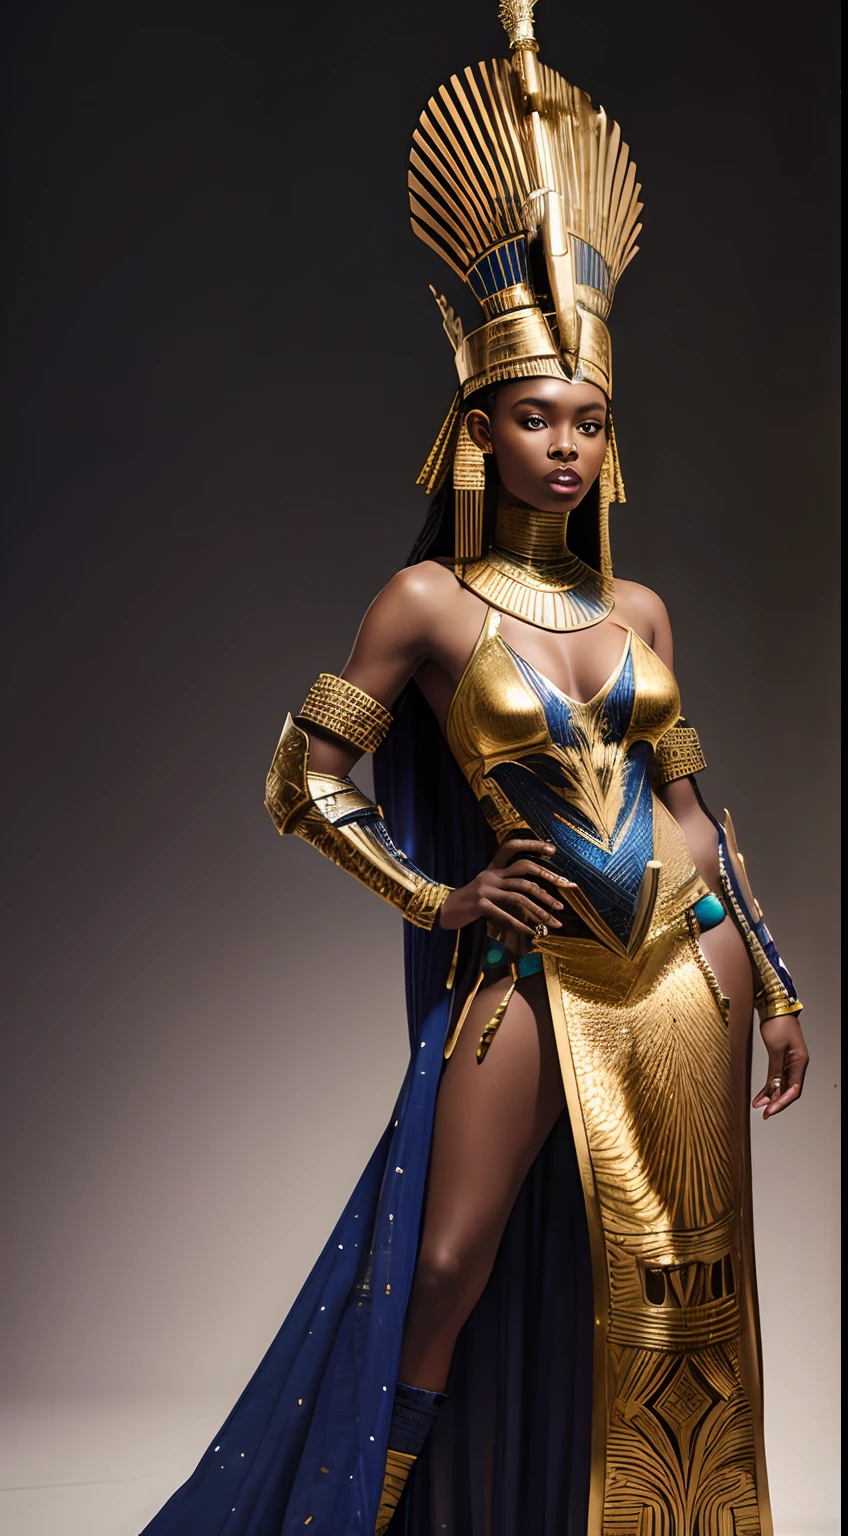 Афрофутуристическая африканская королева-воительница в костюме второй кожи, имитирующем доспехи из зеркальных деталей с египетским дизайном и аналогичной короной Нефертити.